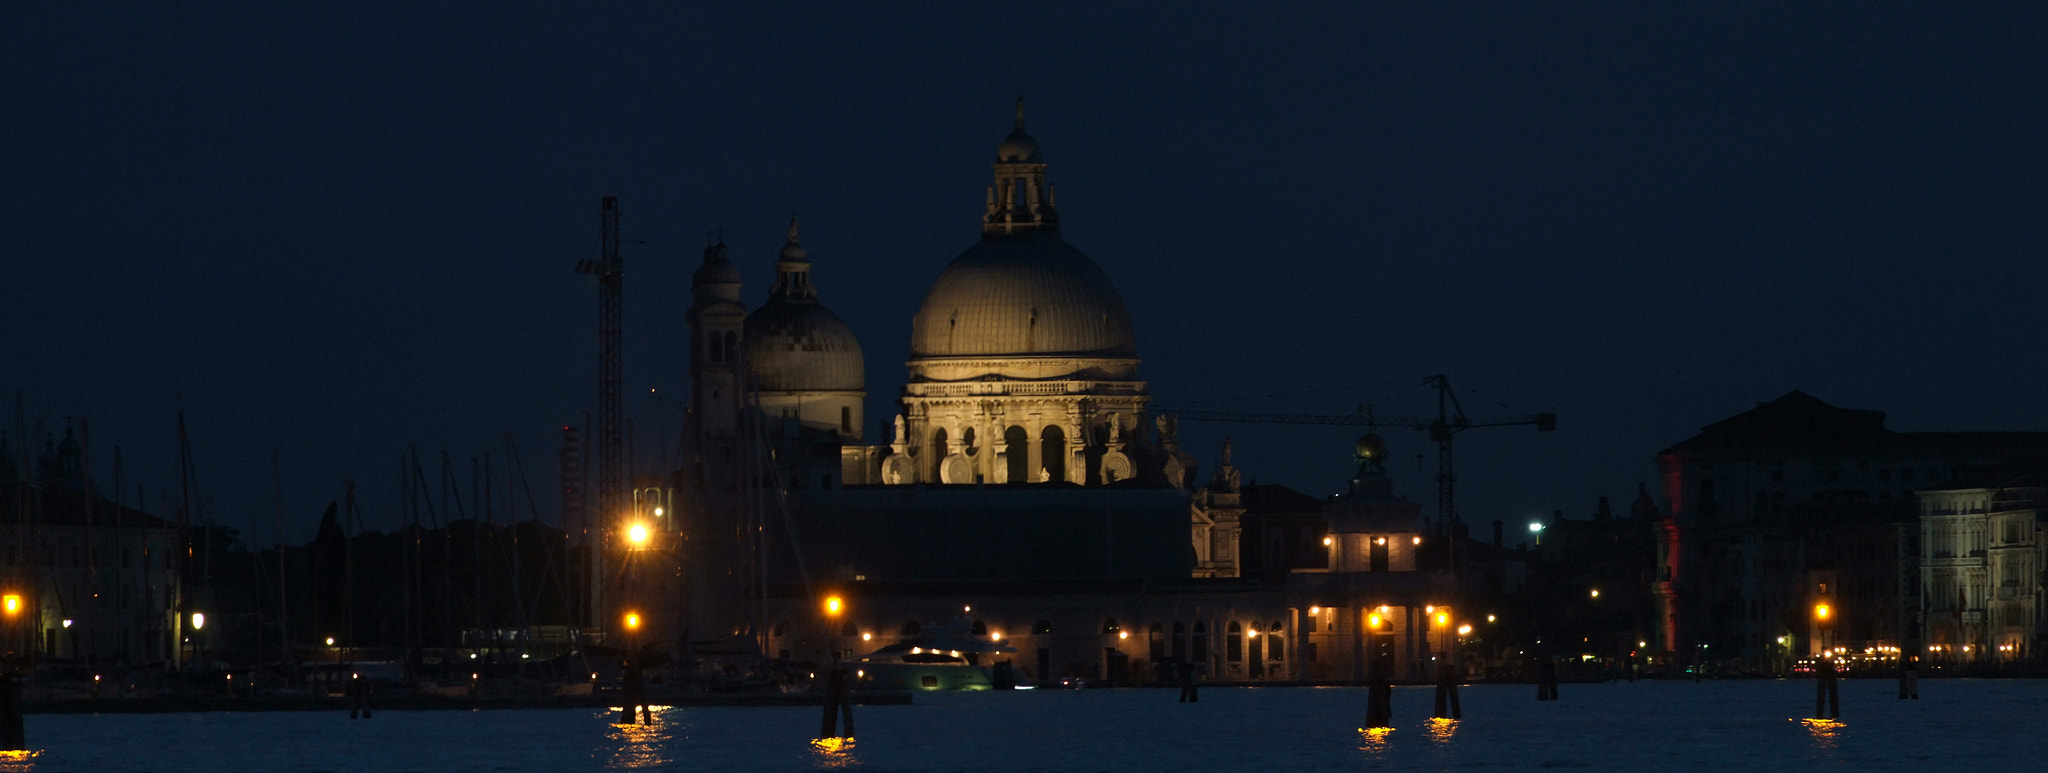 FujiFilm FinePix S200EXR (FinePix S205EXR) sample photo. Venezia chiesa dei santi giovanni e paolo di notte photography